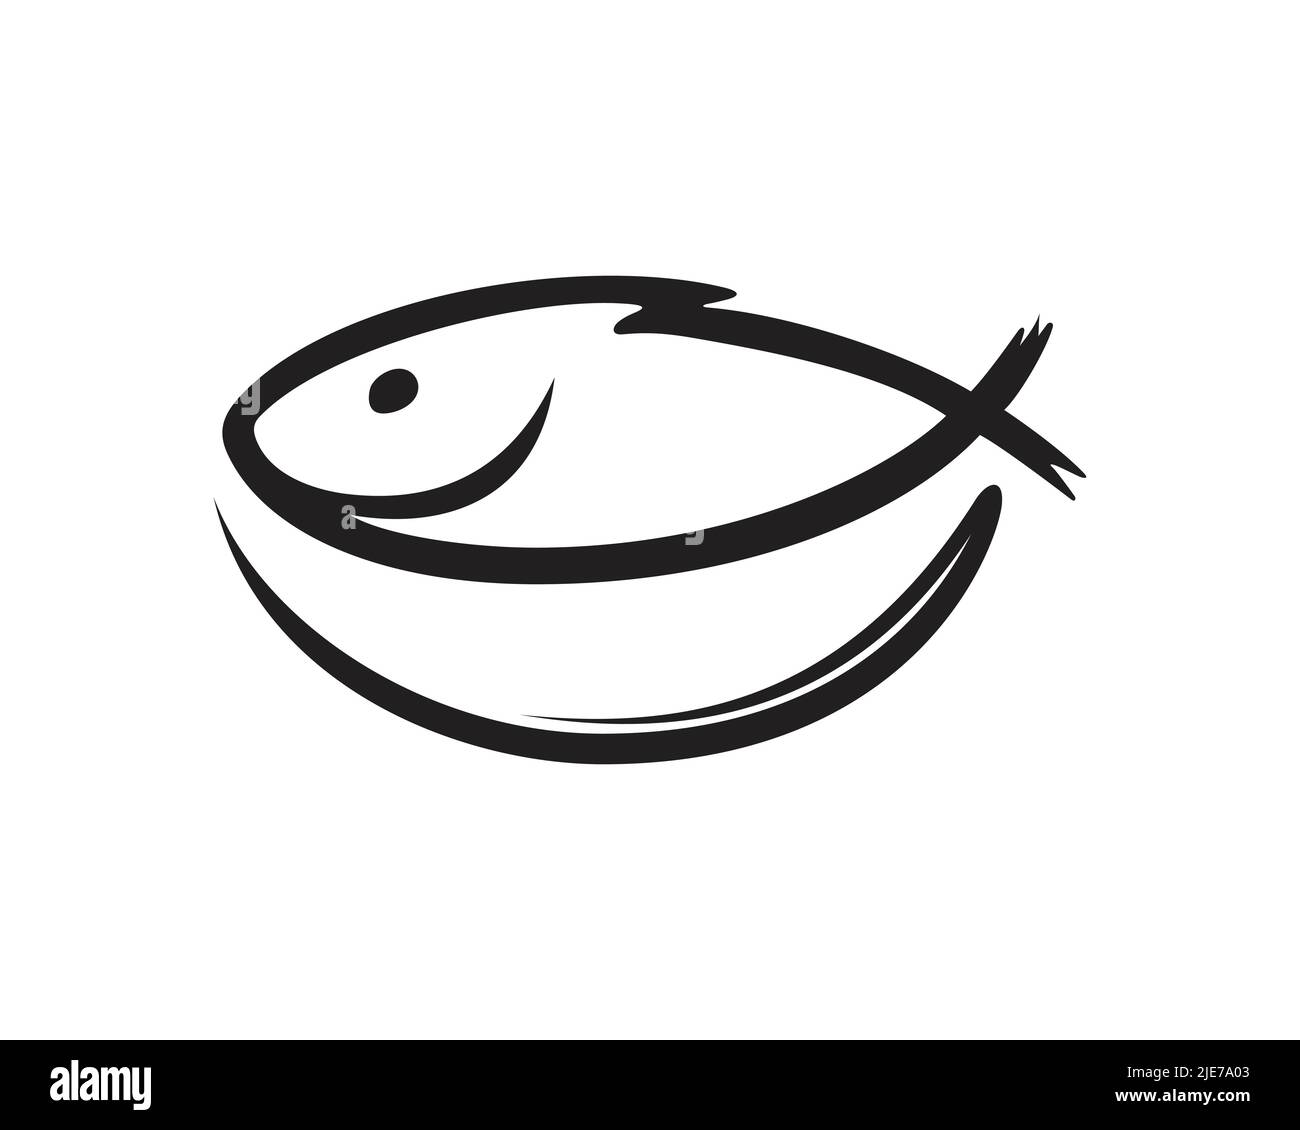 Fisch kombiniert mit Schale visualisiert mit Silhouette Style Stock Vektor